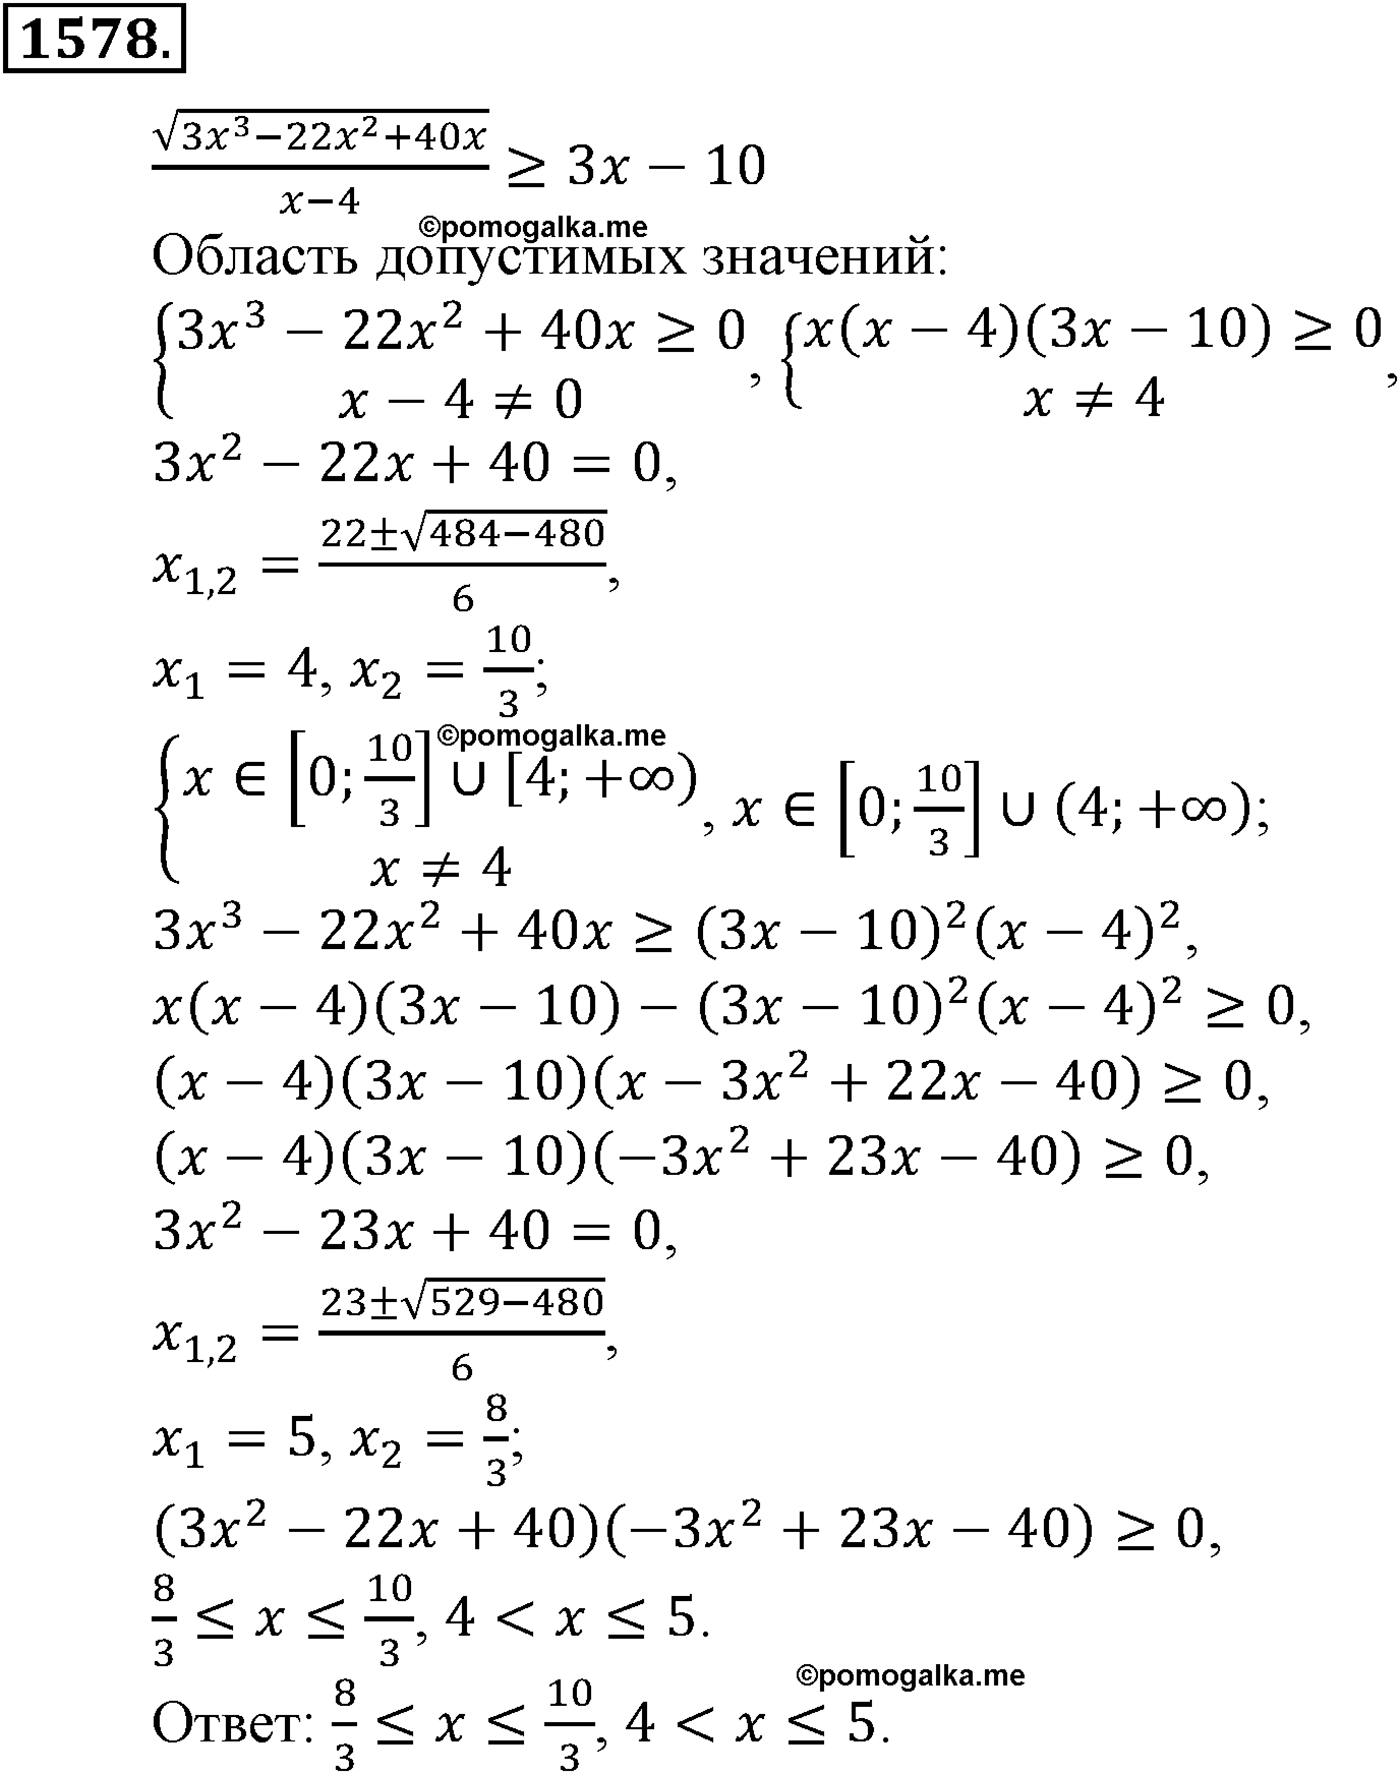 разбор задачи №1578 по алгебре за 10-11 класс из учебника Алимова, Колягина